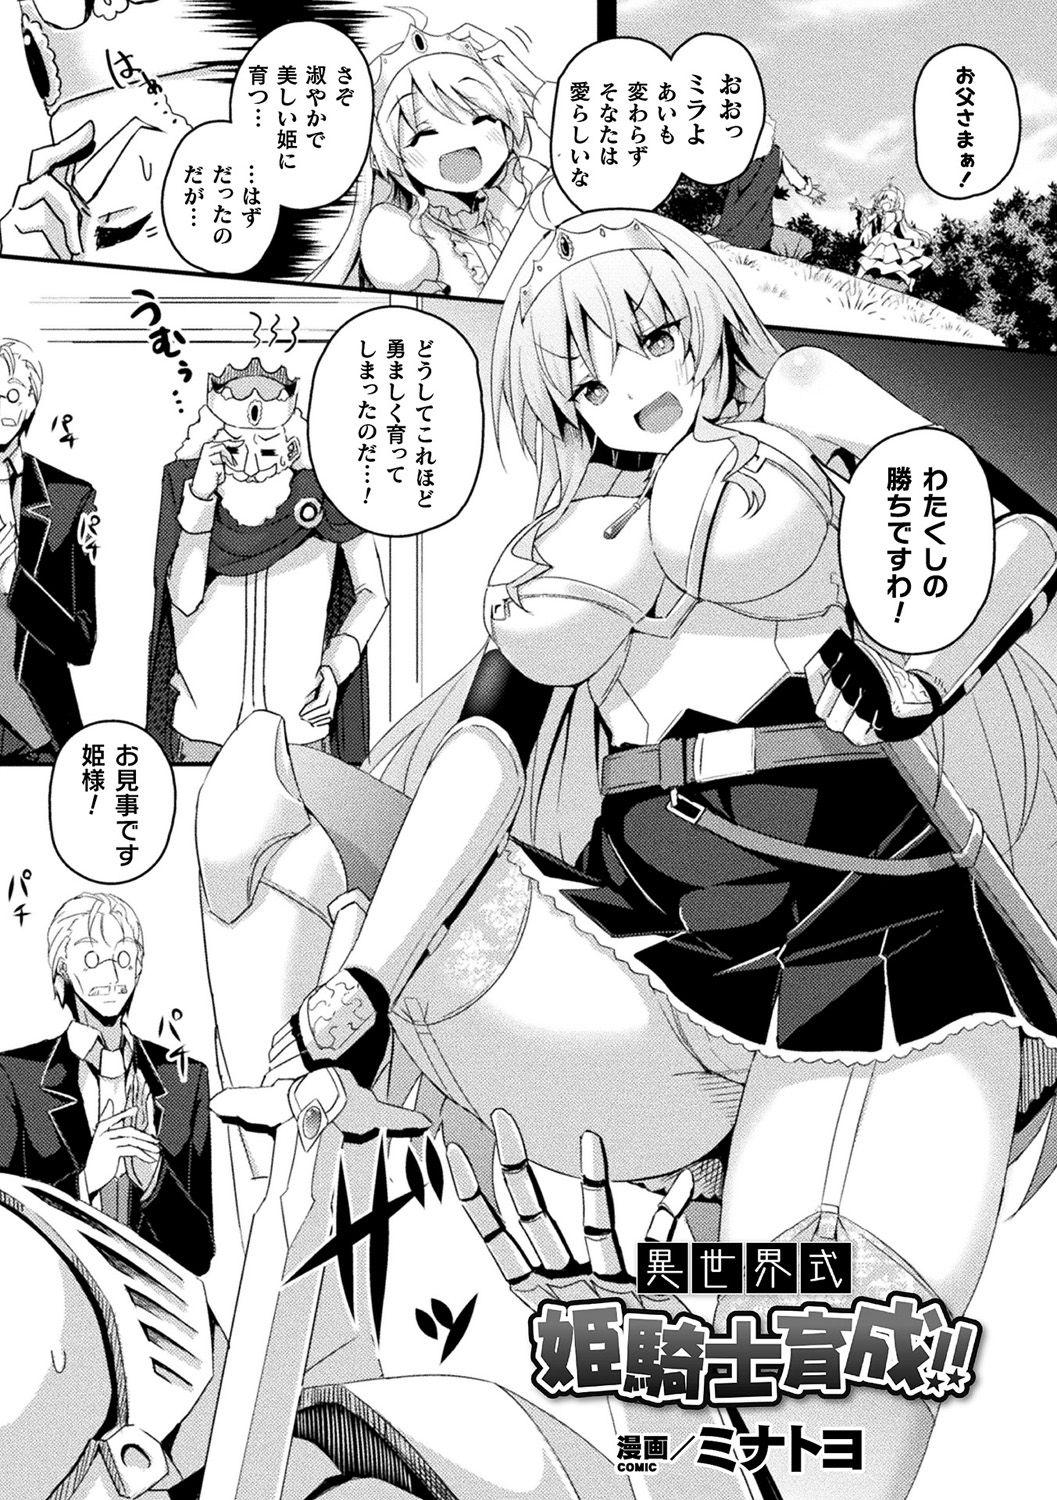 Gilf [Anthology] Bessatsu Comic Unreal Ponkotsu Fantasy Heroine H ~Doji o Funde Gyakuten Saretari Ero Trap ni Hamattari!?~ Vol. 2 [Digital] Amatuer Sex - Picture 2